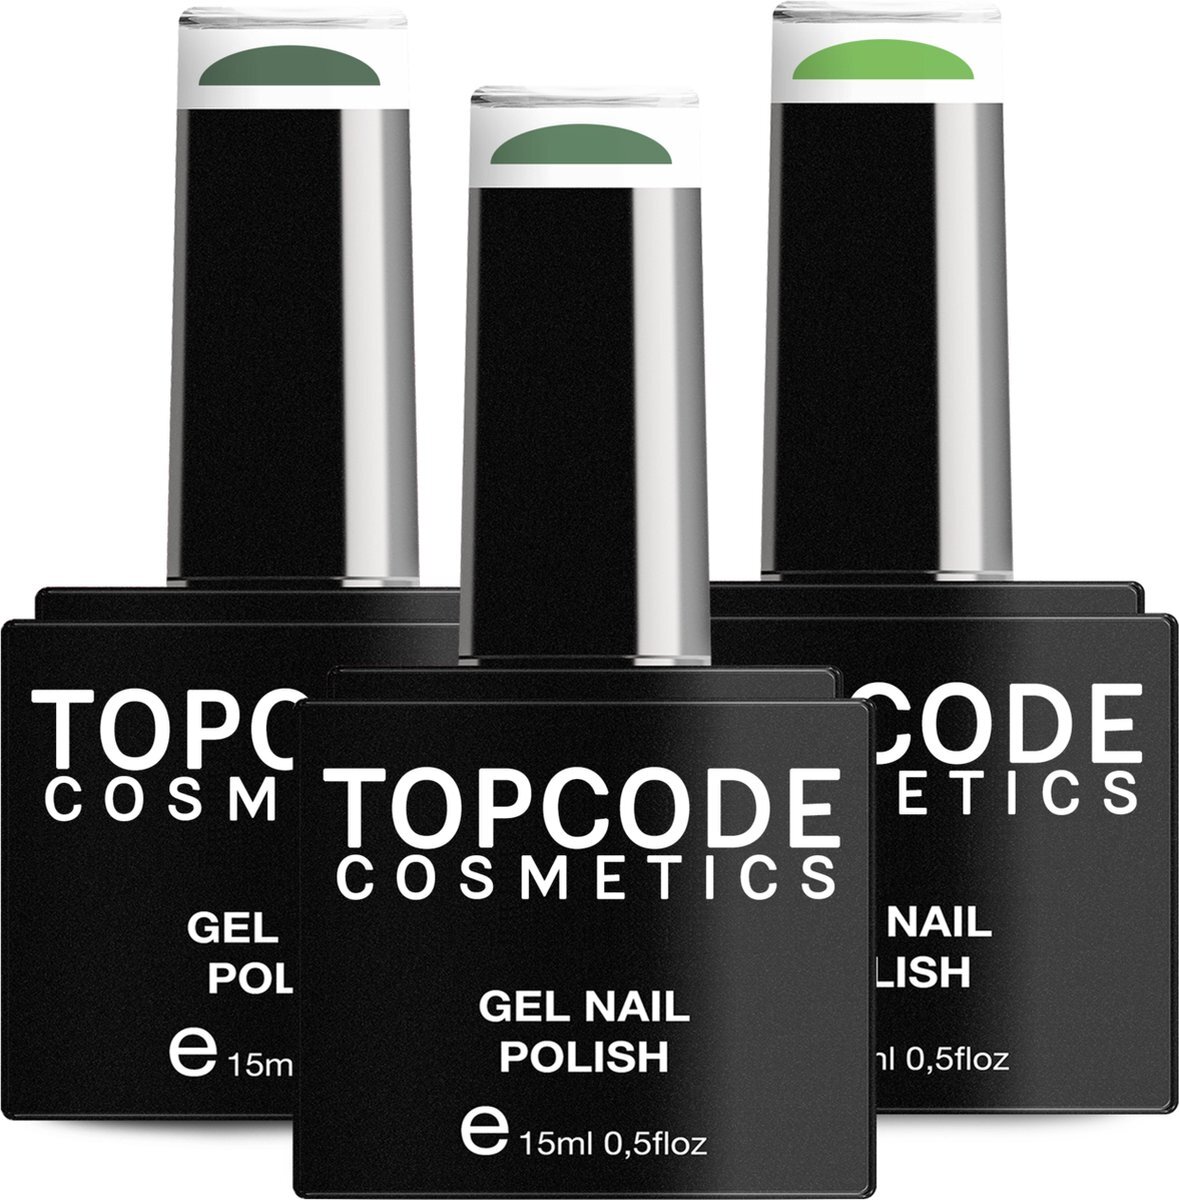 TOPCODE Cosmetics Gellak van - 3 pack gel nagellak - Groen set 2 - 3 x 15 ml flesjes - Deep Sparkle + Como + Sea Green